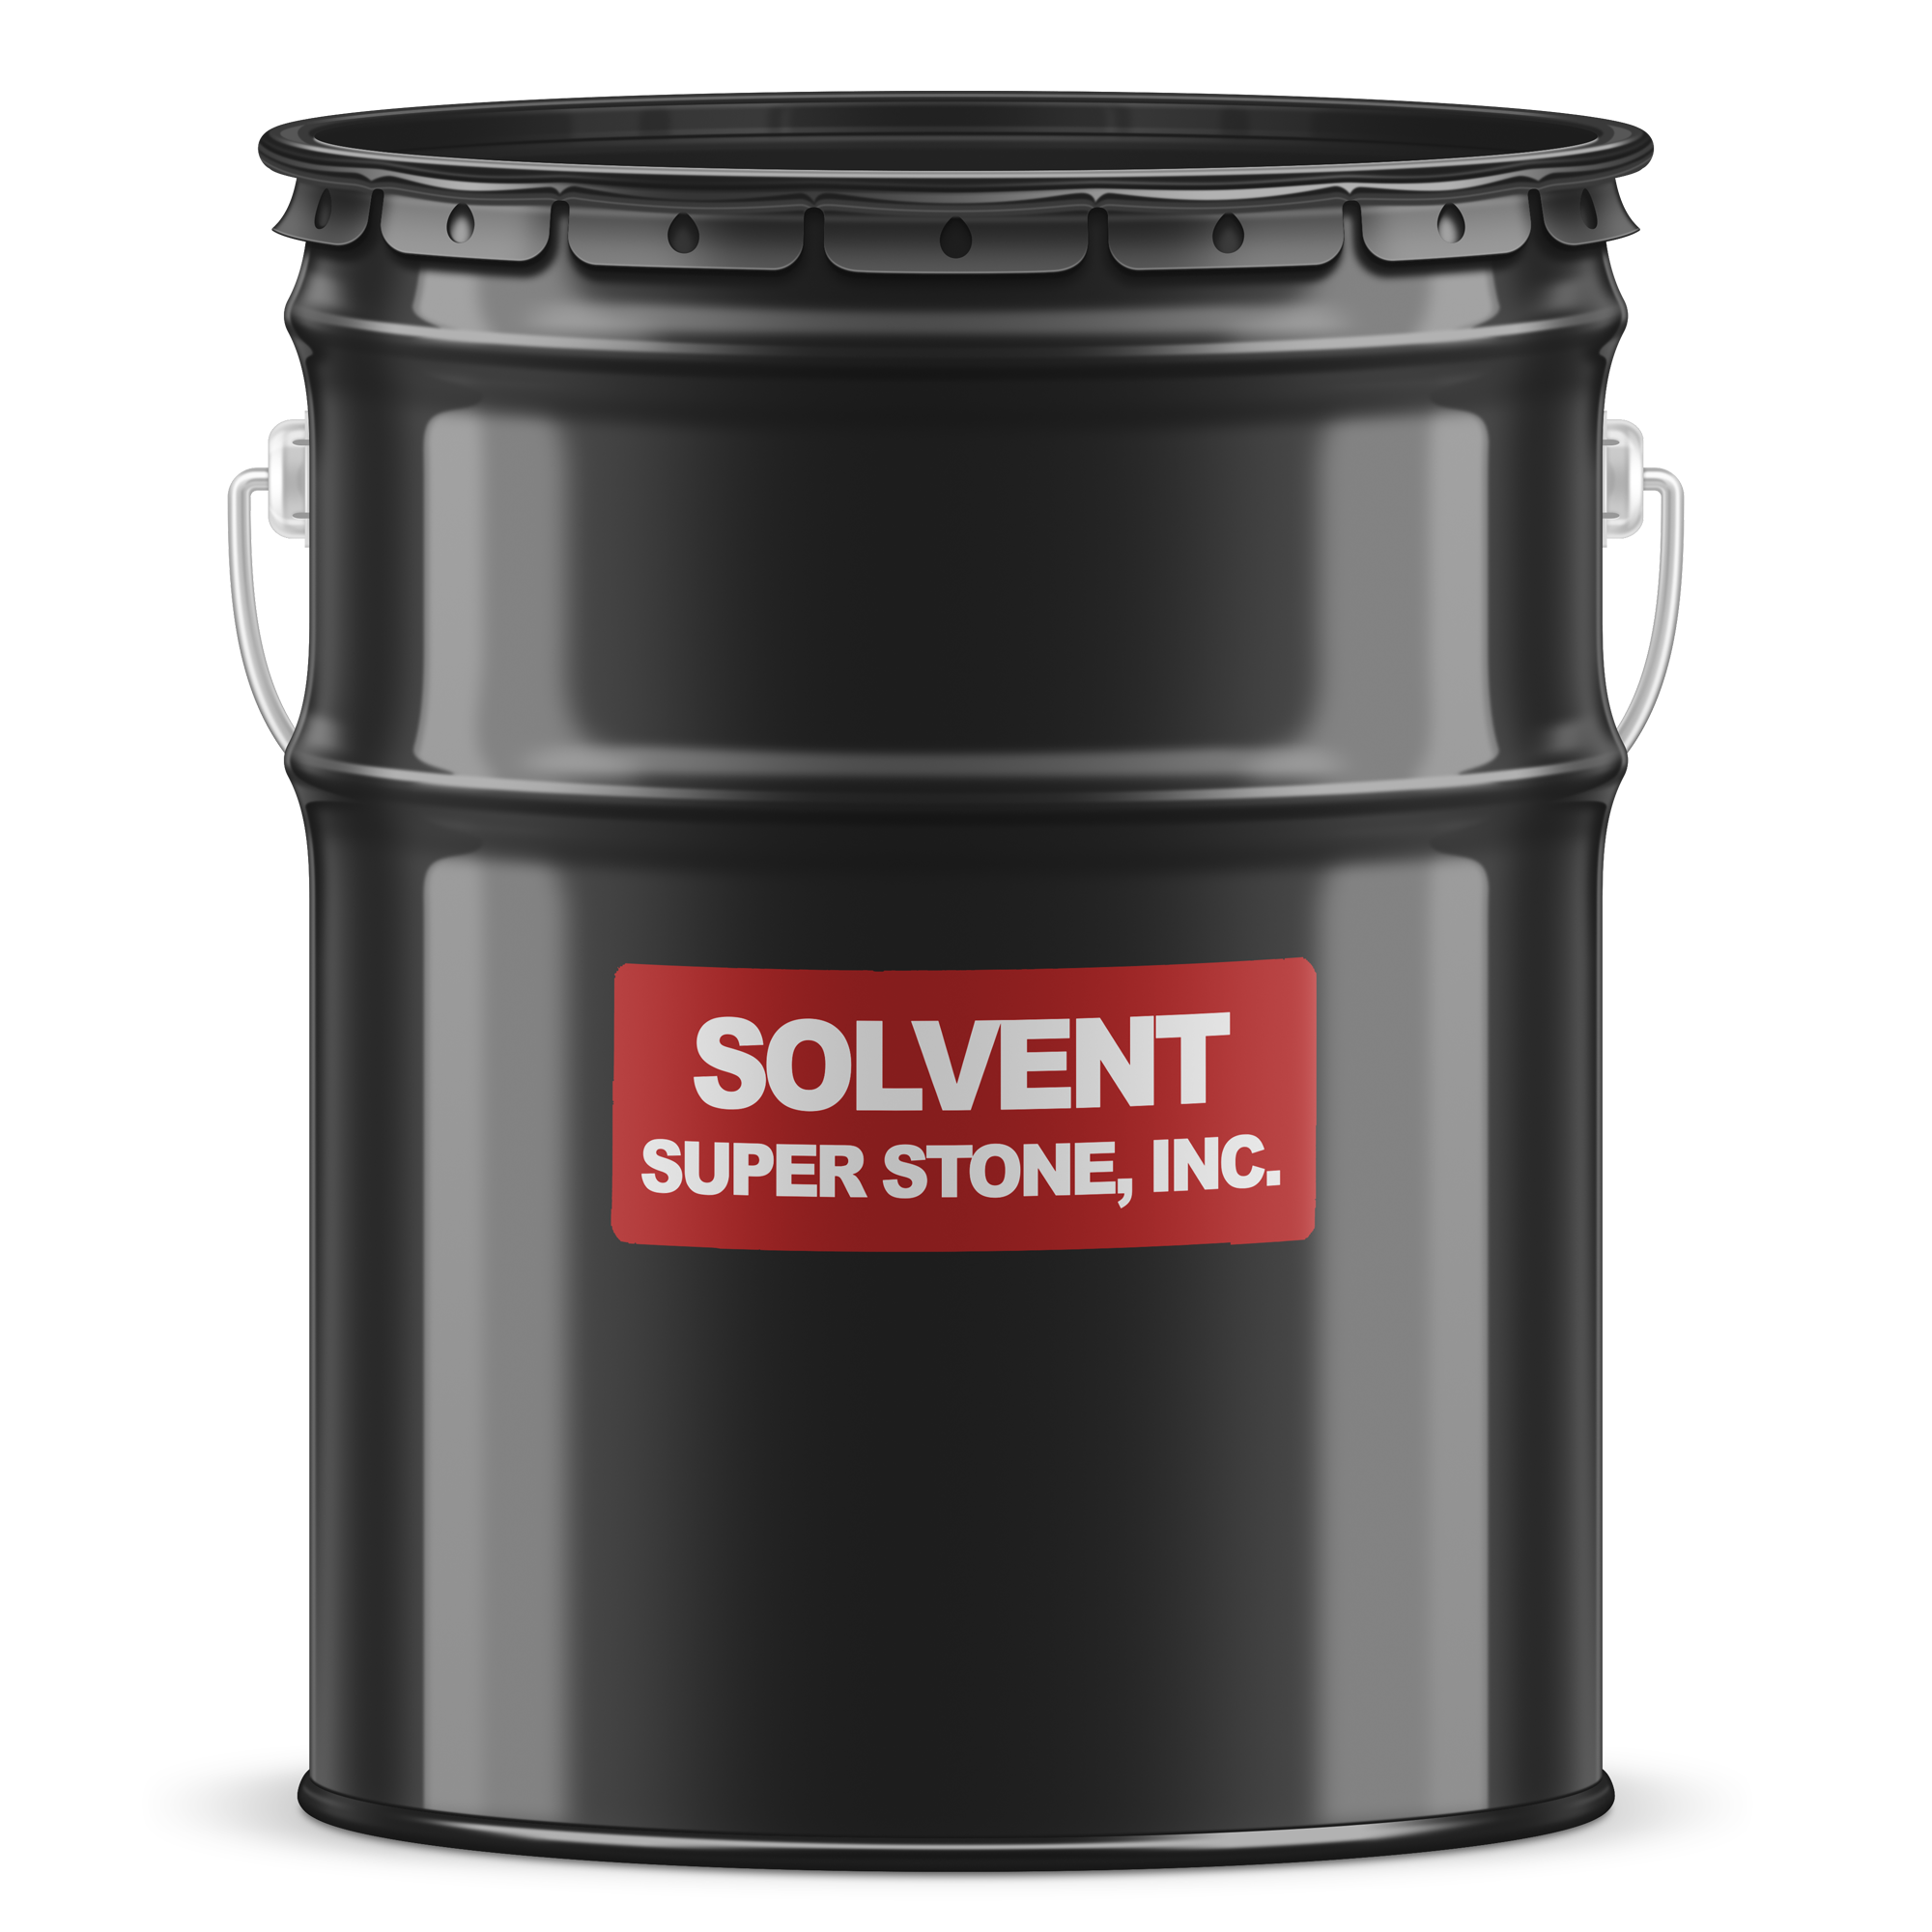 Solvent – Super Stone, Inc.